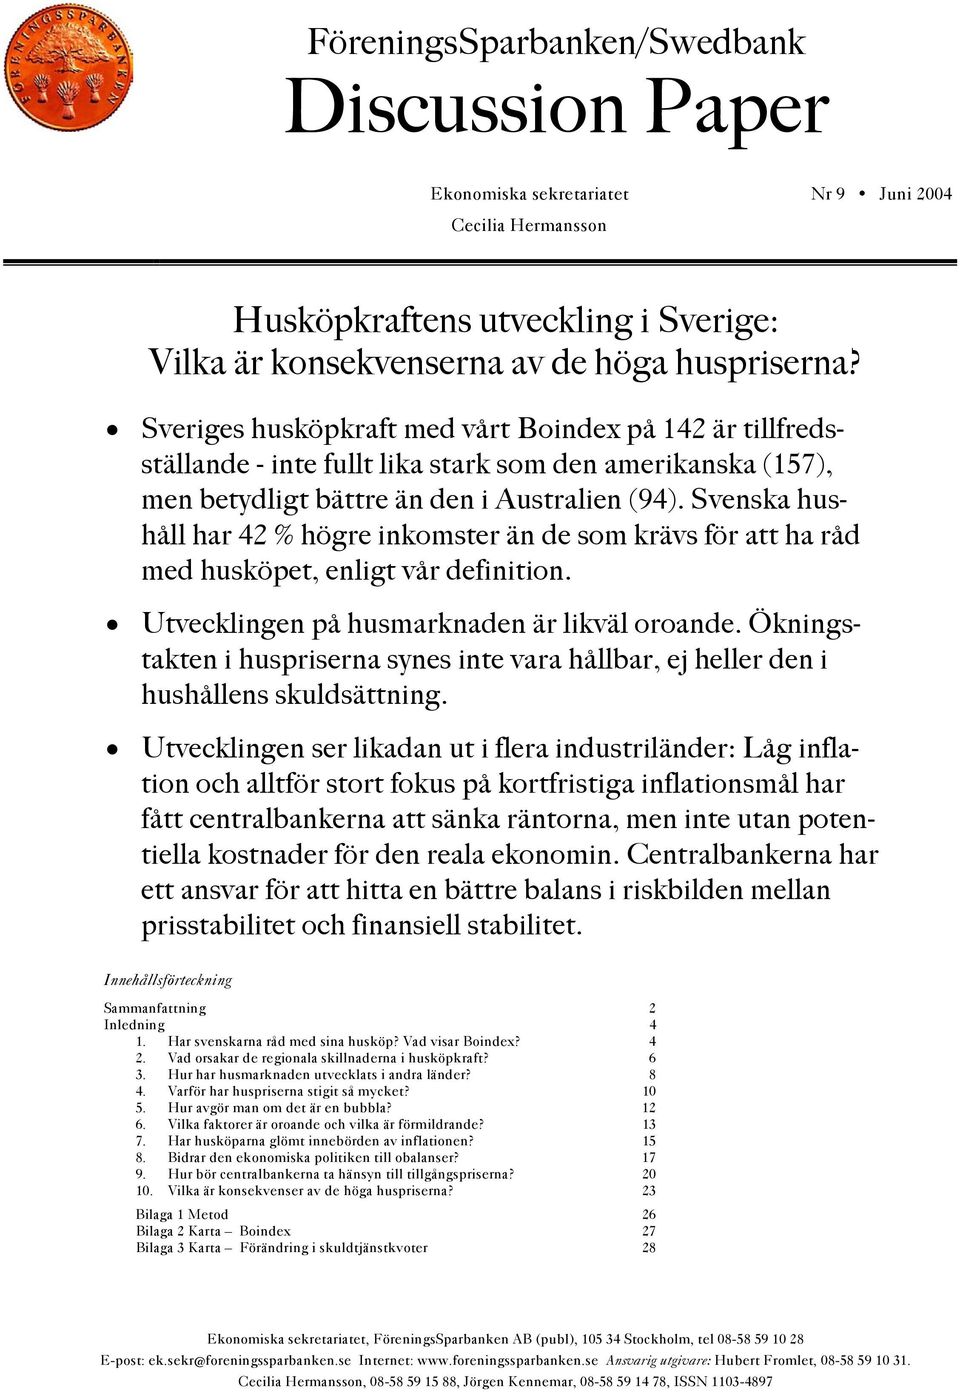 Svenska hushåll har 42 % högre inkomster än de som krävs för att ha råd med husköpet, enligt vår definition. Utvecklingen på husmarknaden är likväl oroande.